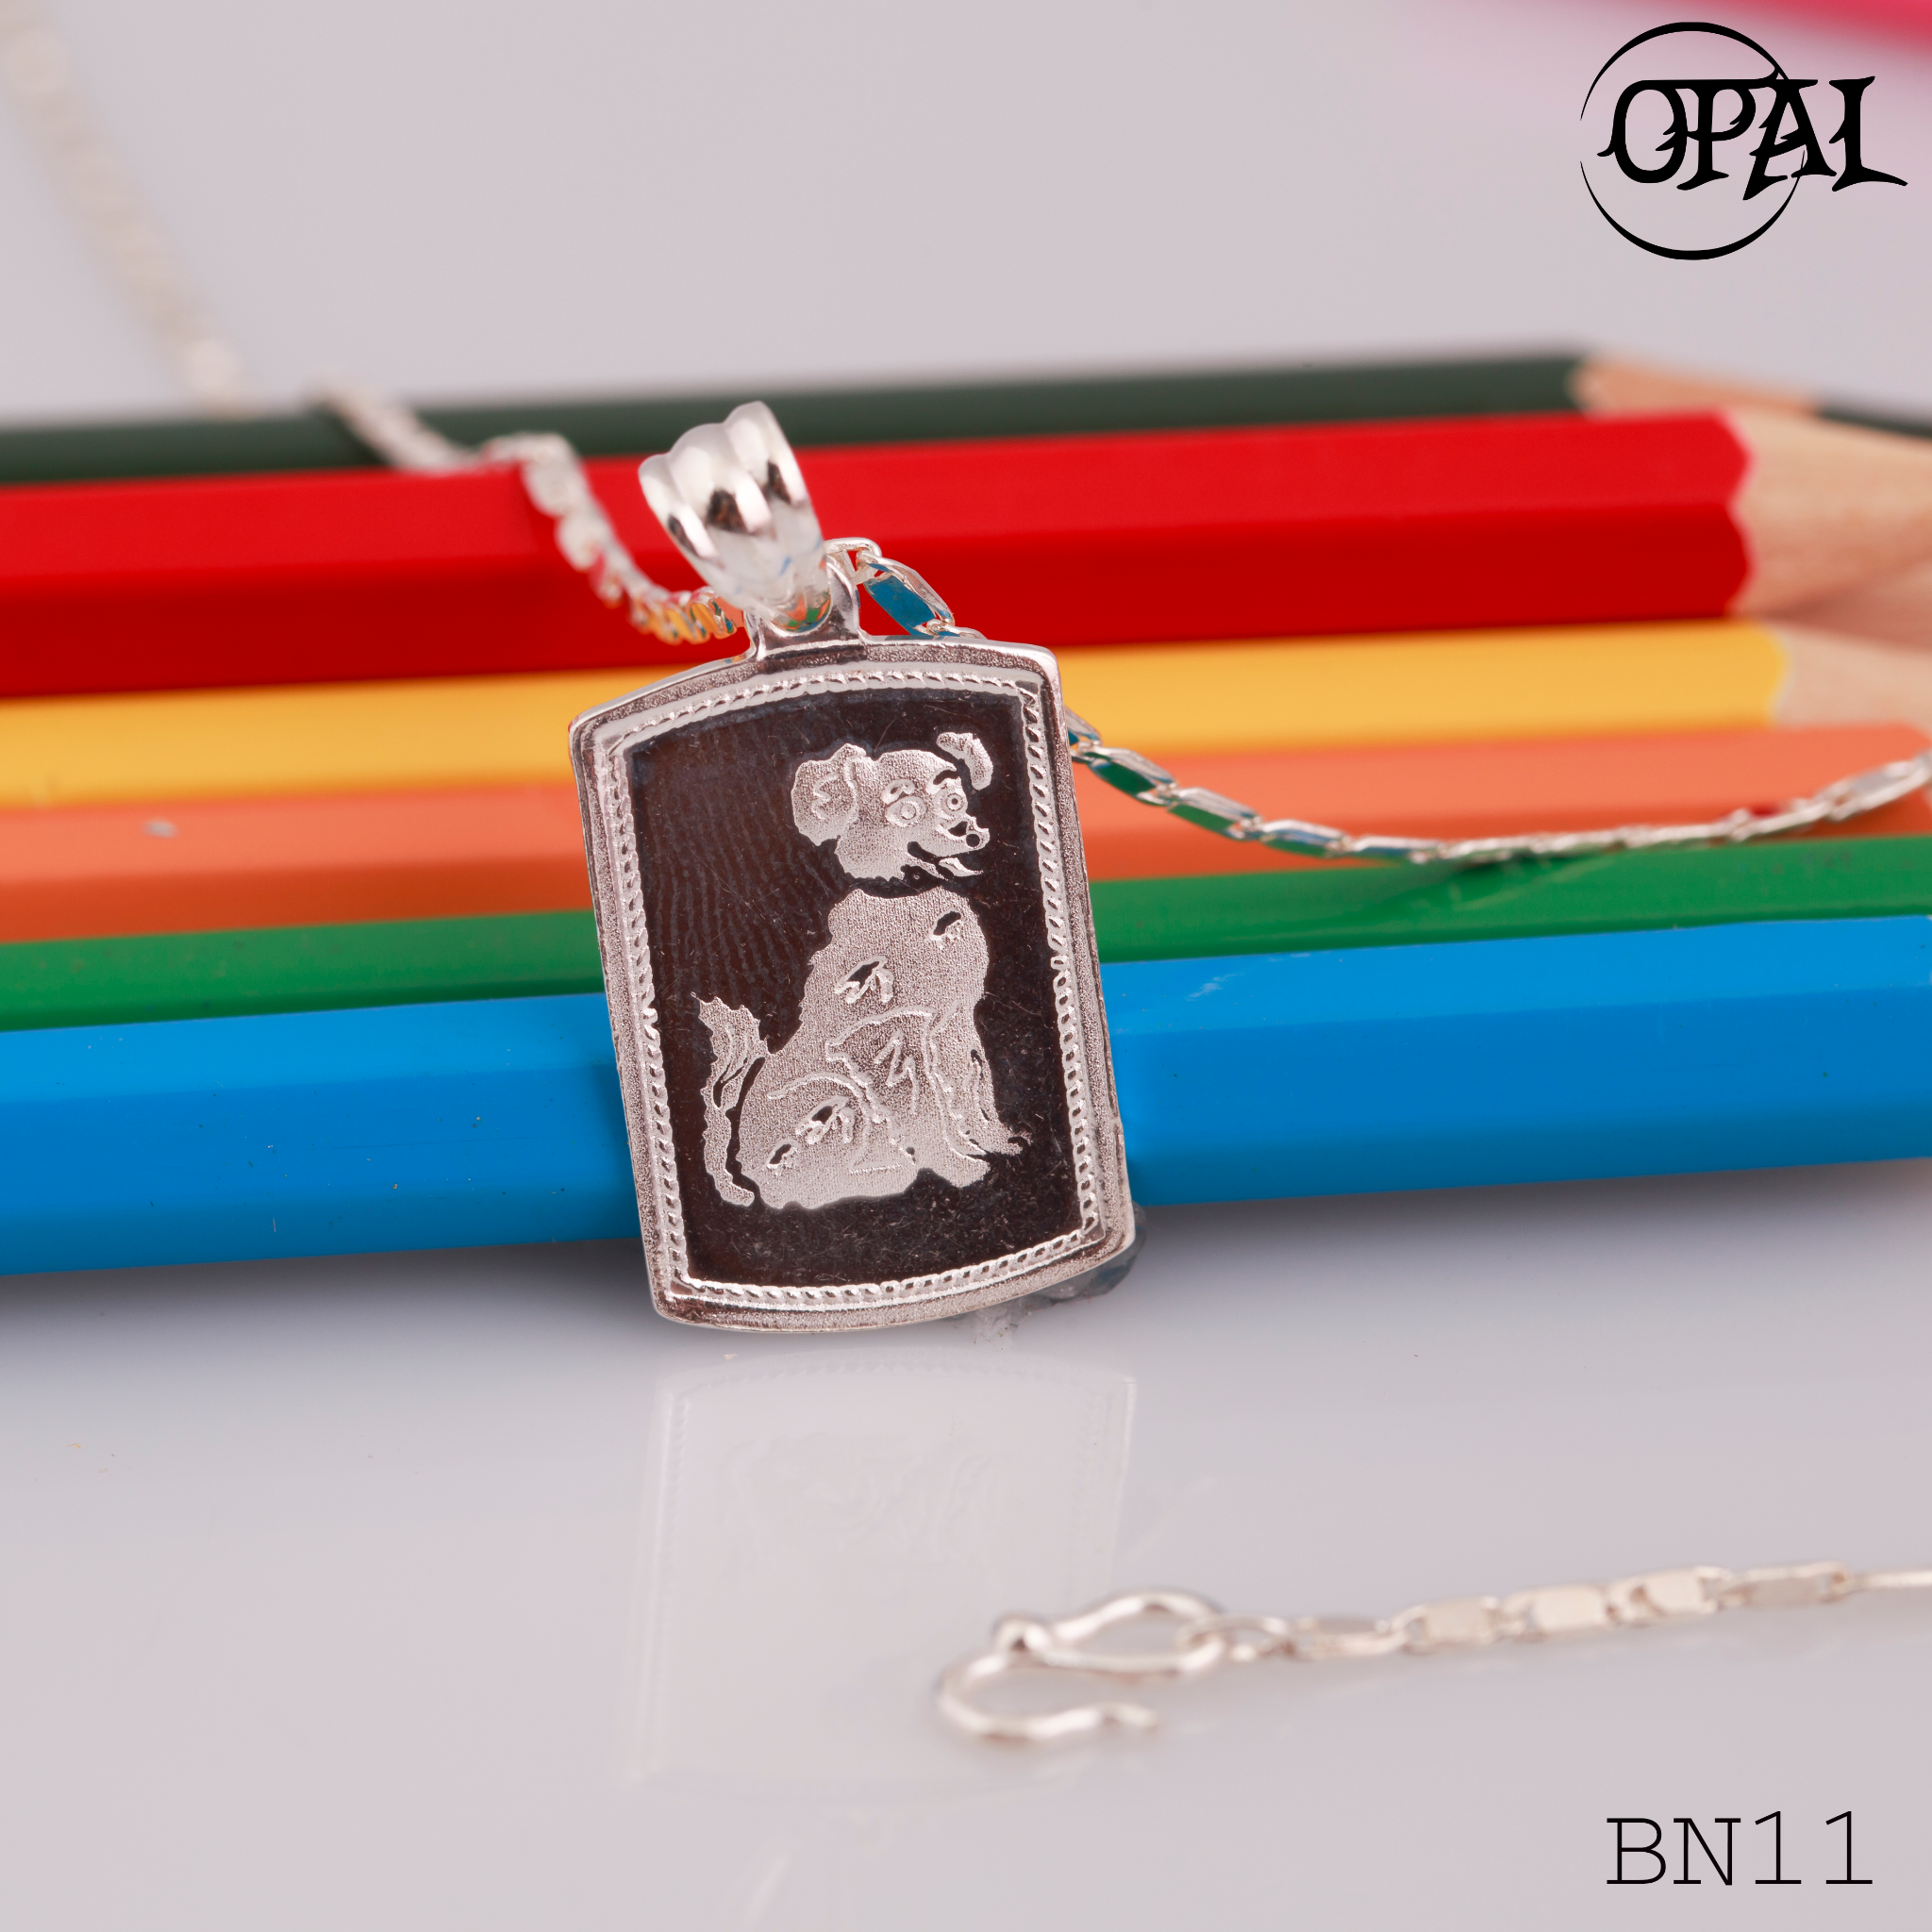  BN11- Dây chuyền bạc dành cho bé Opal 